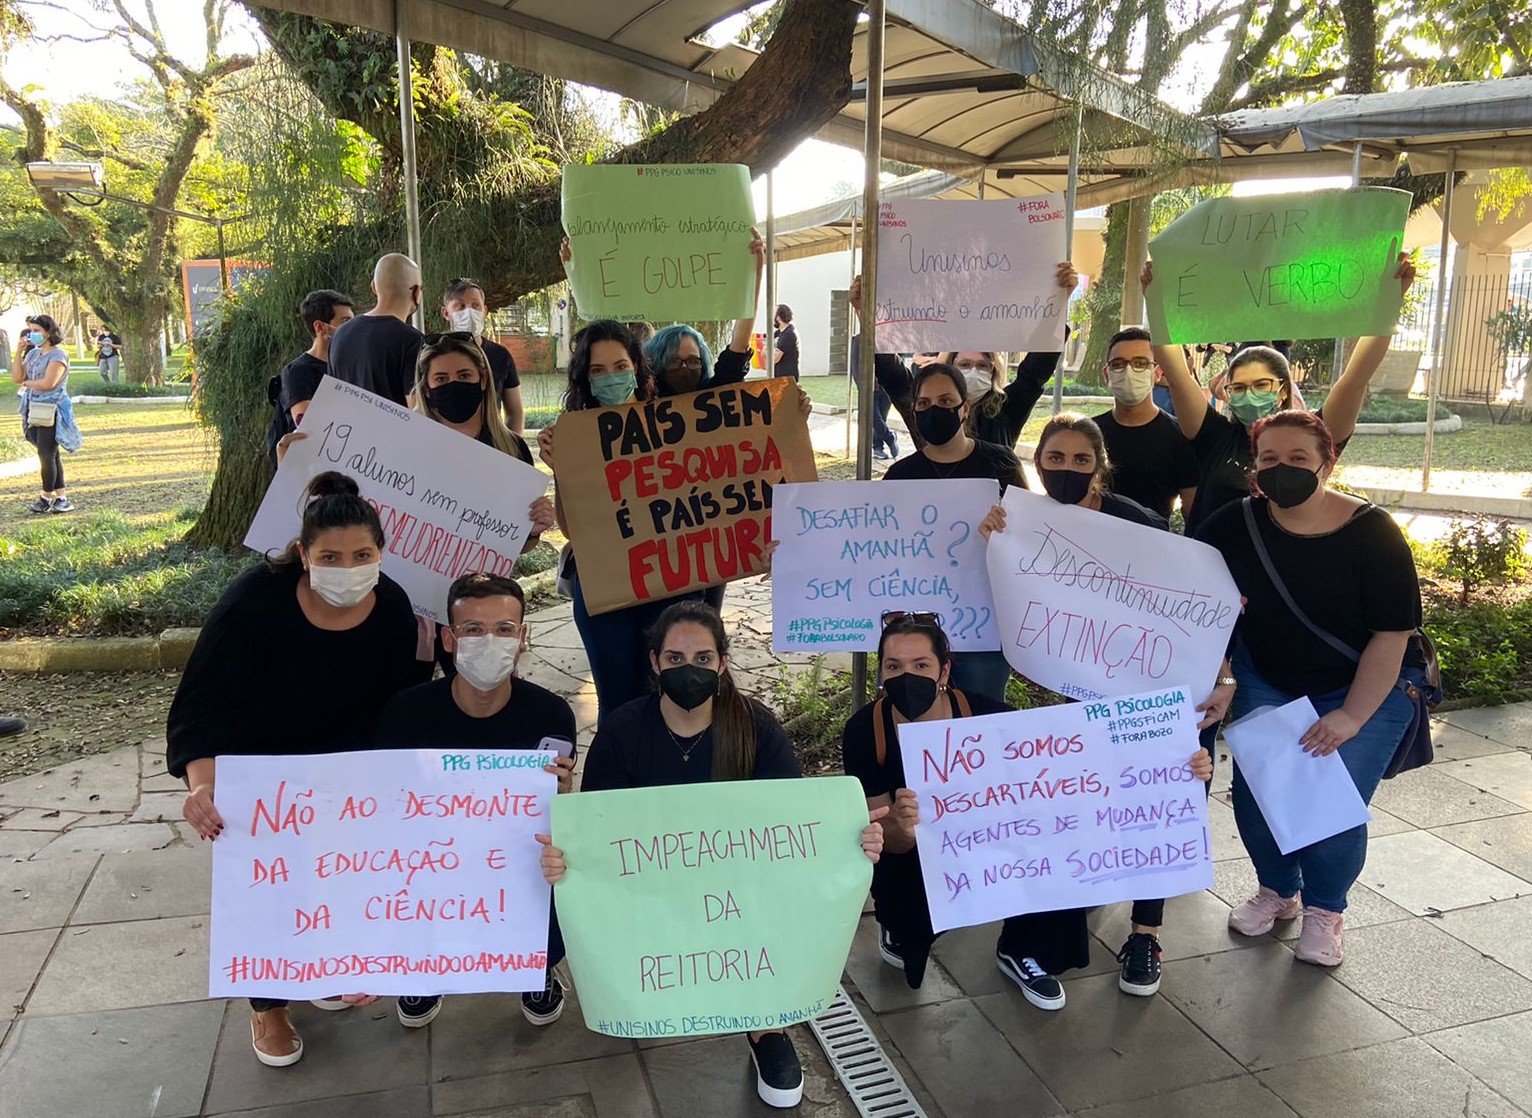 Protesto de estudantes após anúncio de encerramento de 12 programas de pós-graduação: Unisinos culpa crise econômica e perda de financiamento público (Foto: Vanessa Ruffatto)